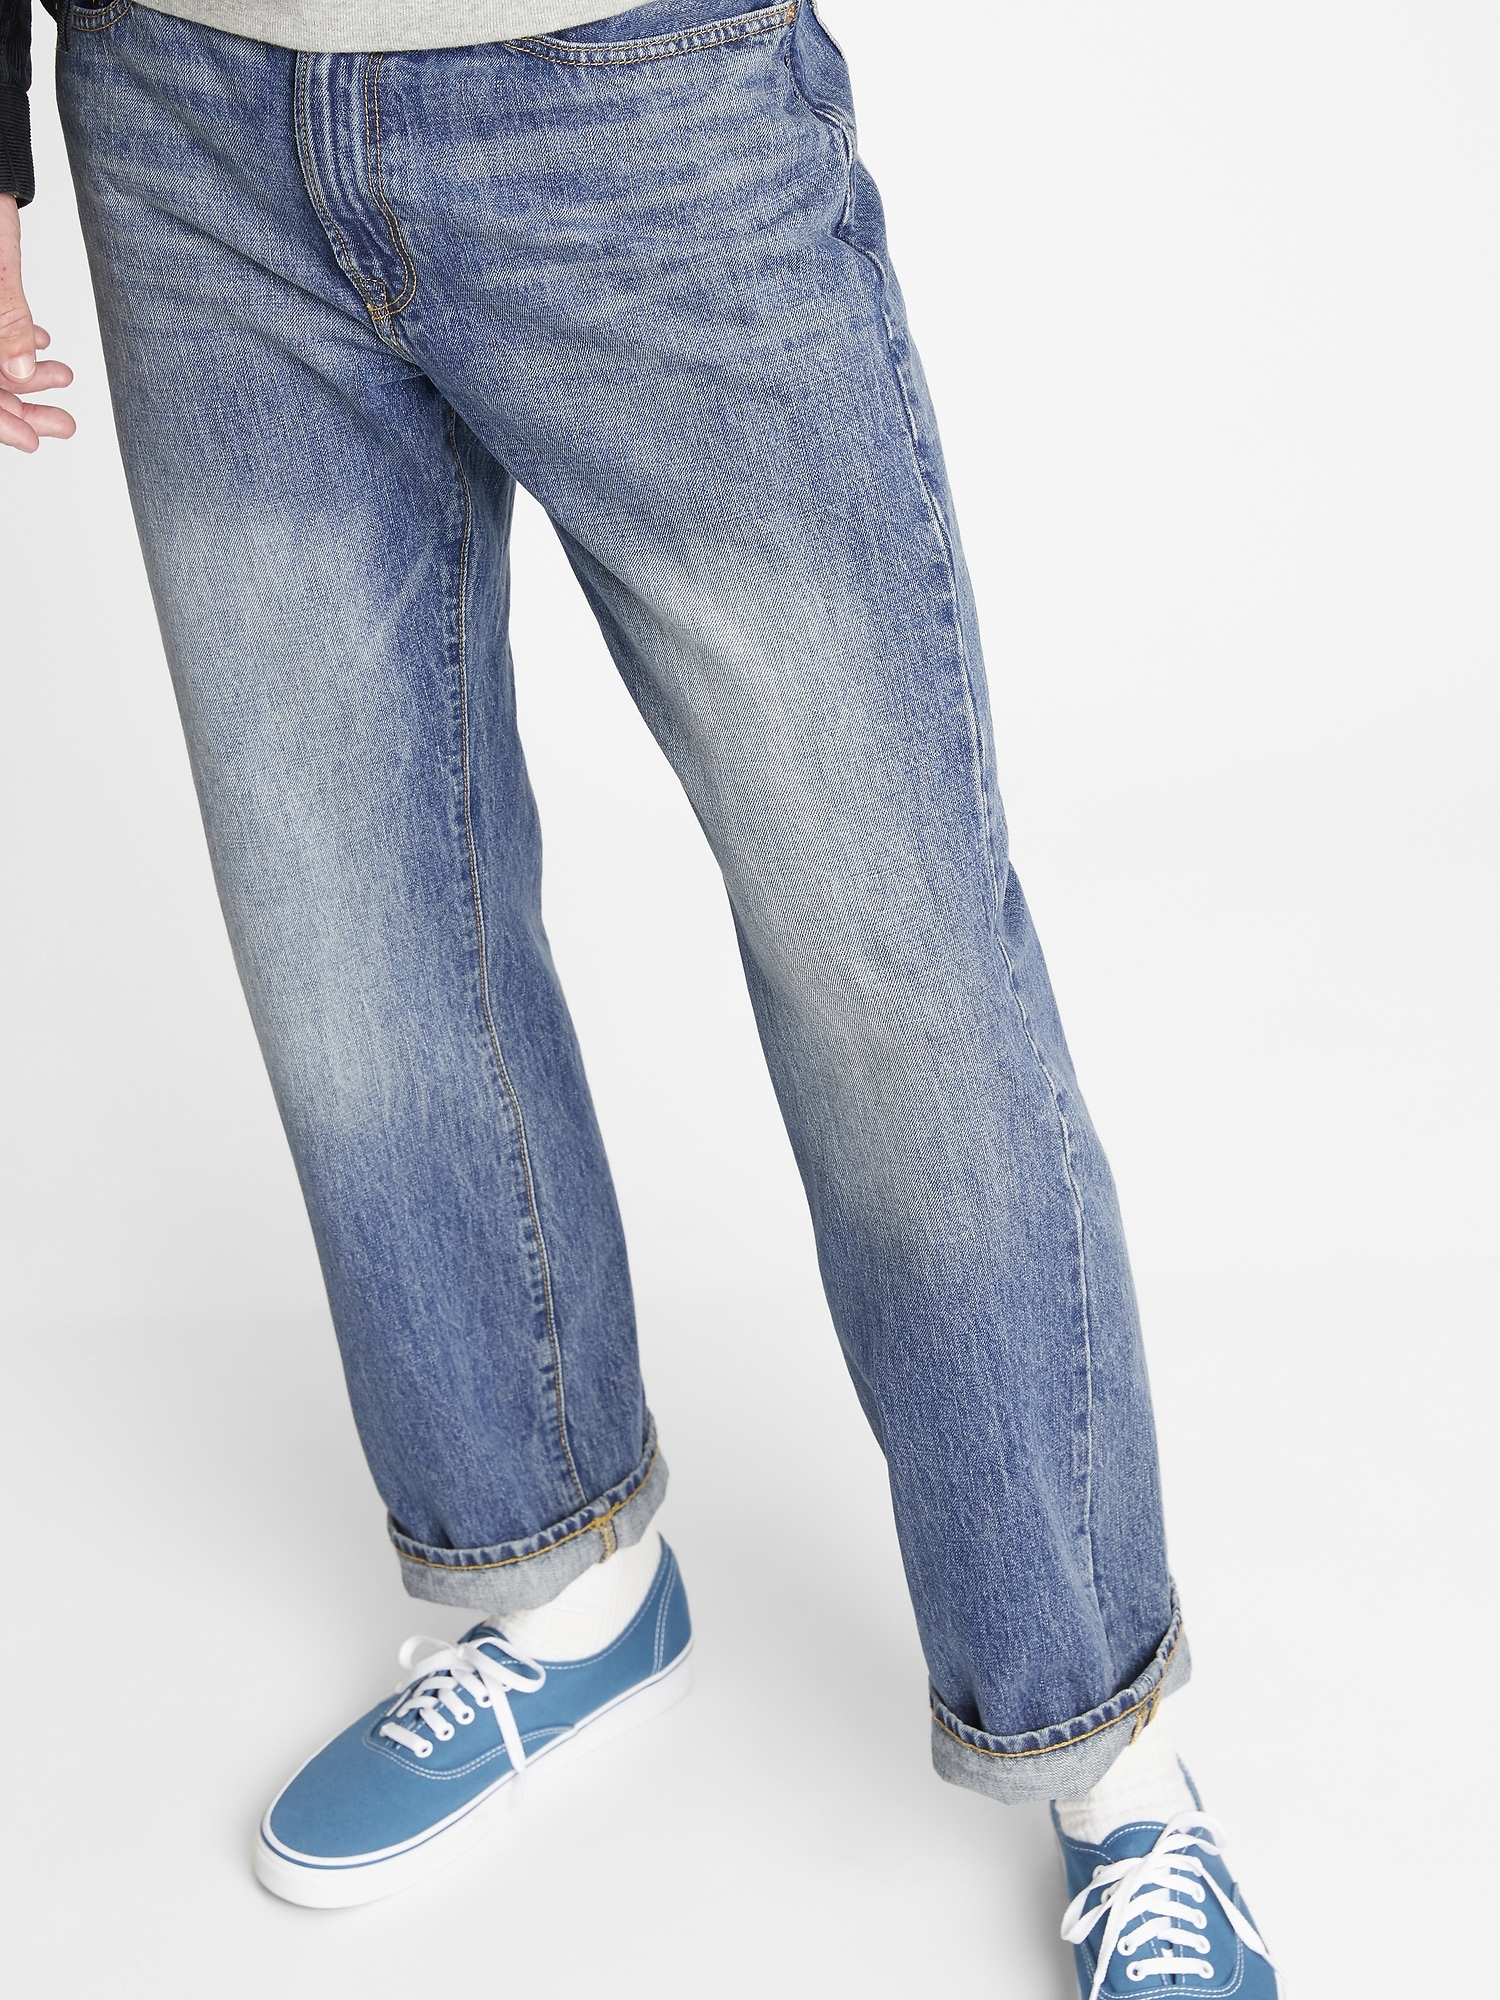 gap denim jeans mens